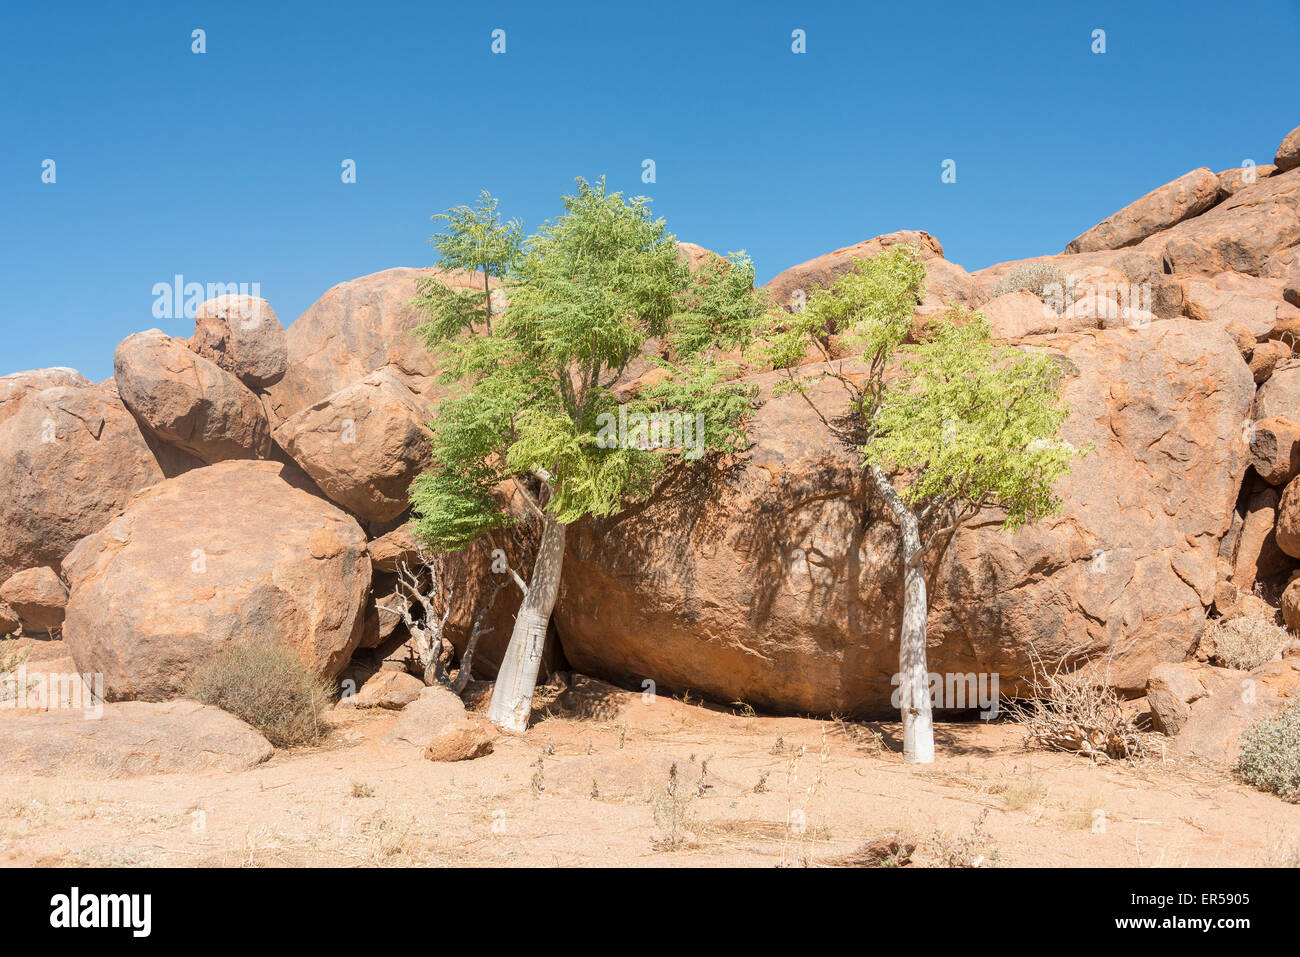 Akazien inmitten von Felsen, Solitaire, Wüste Namib, Namib-Naukluft-Park, Republik Namibia Stockfoto